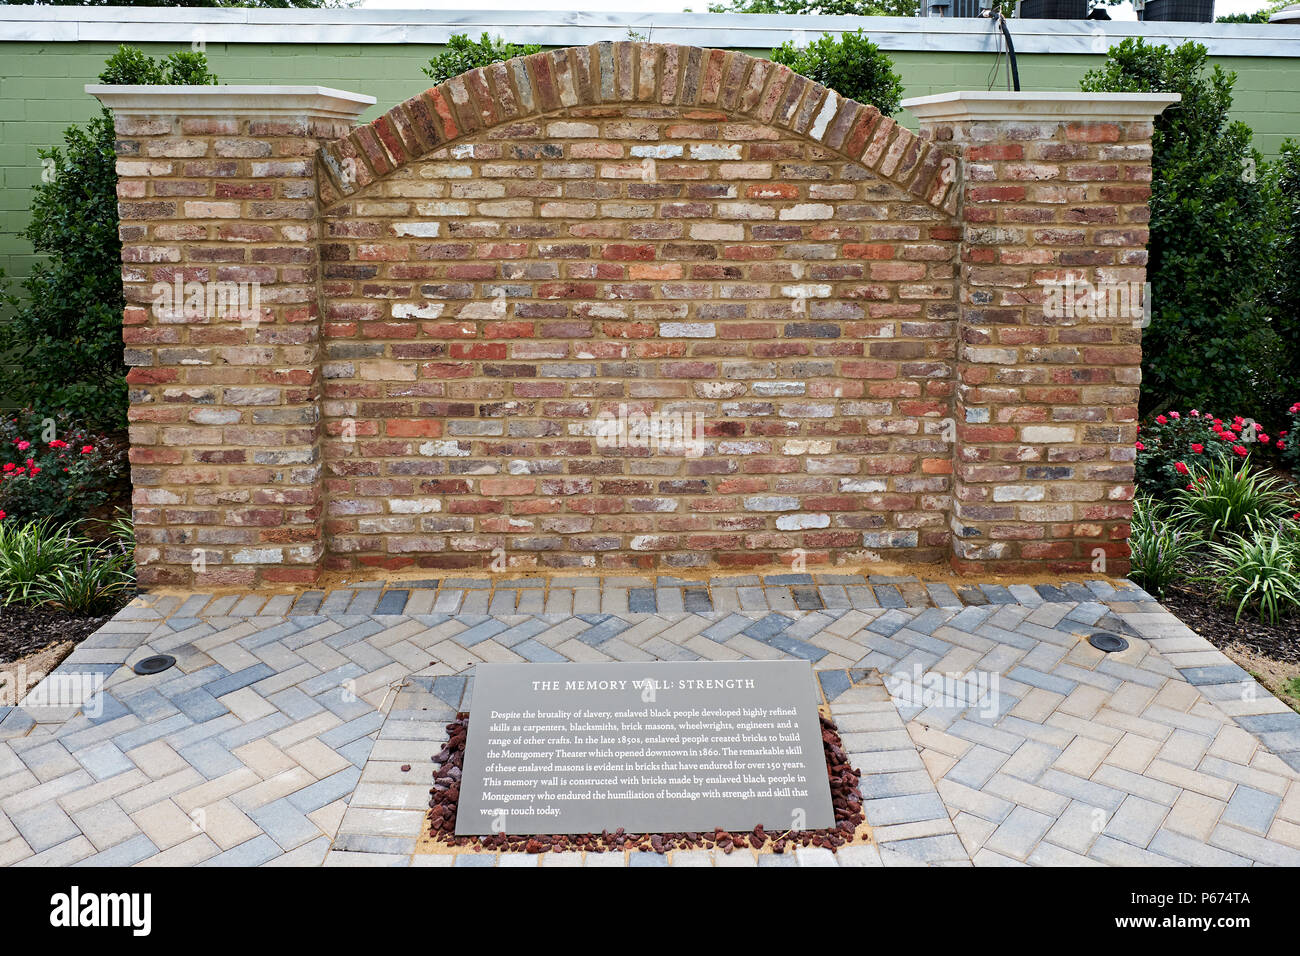 Los jardines y el muro de la memoria en el Memorial Nacional para la paz y la justicia, museo y monumento en Montgomery, Alabama, EE.UU., un hito de los derechos civiles. Foto de stock